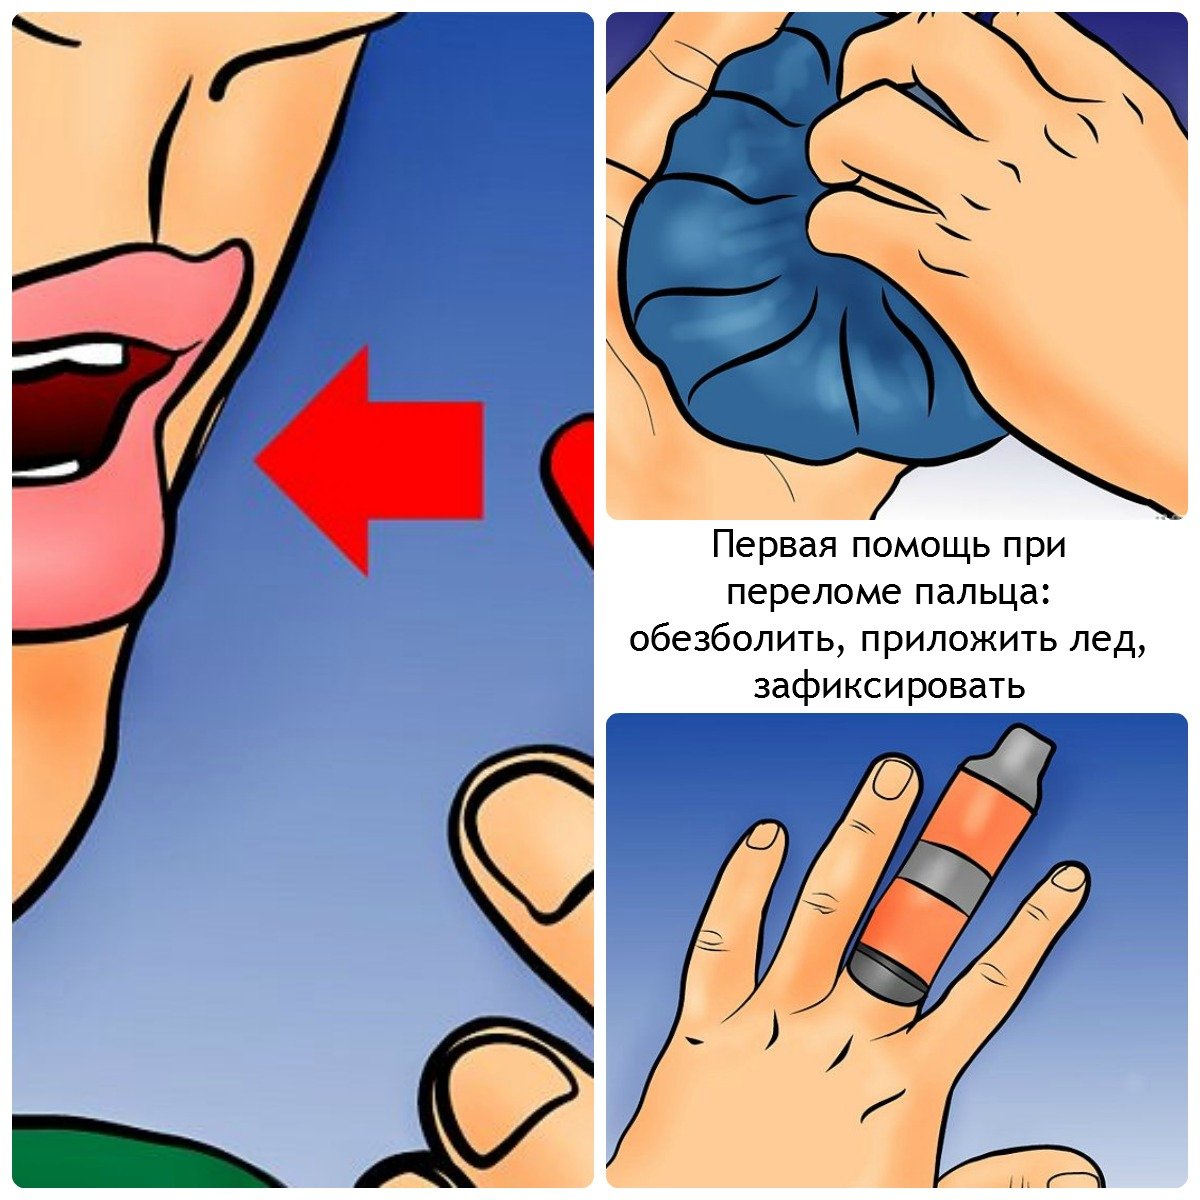 Первая помощь при переломе пальца